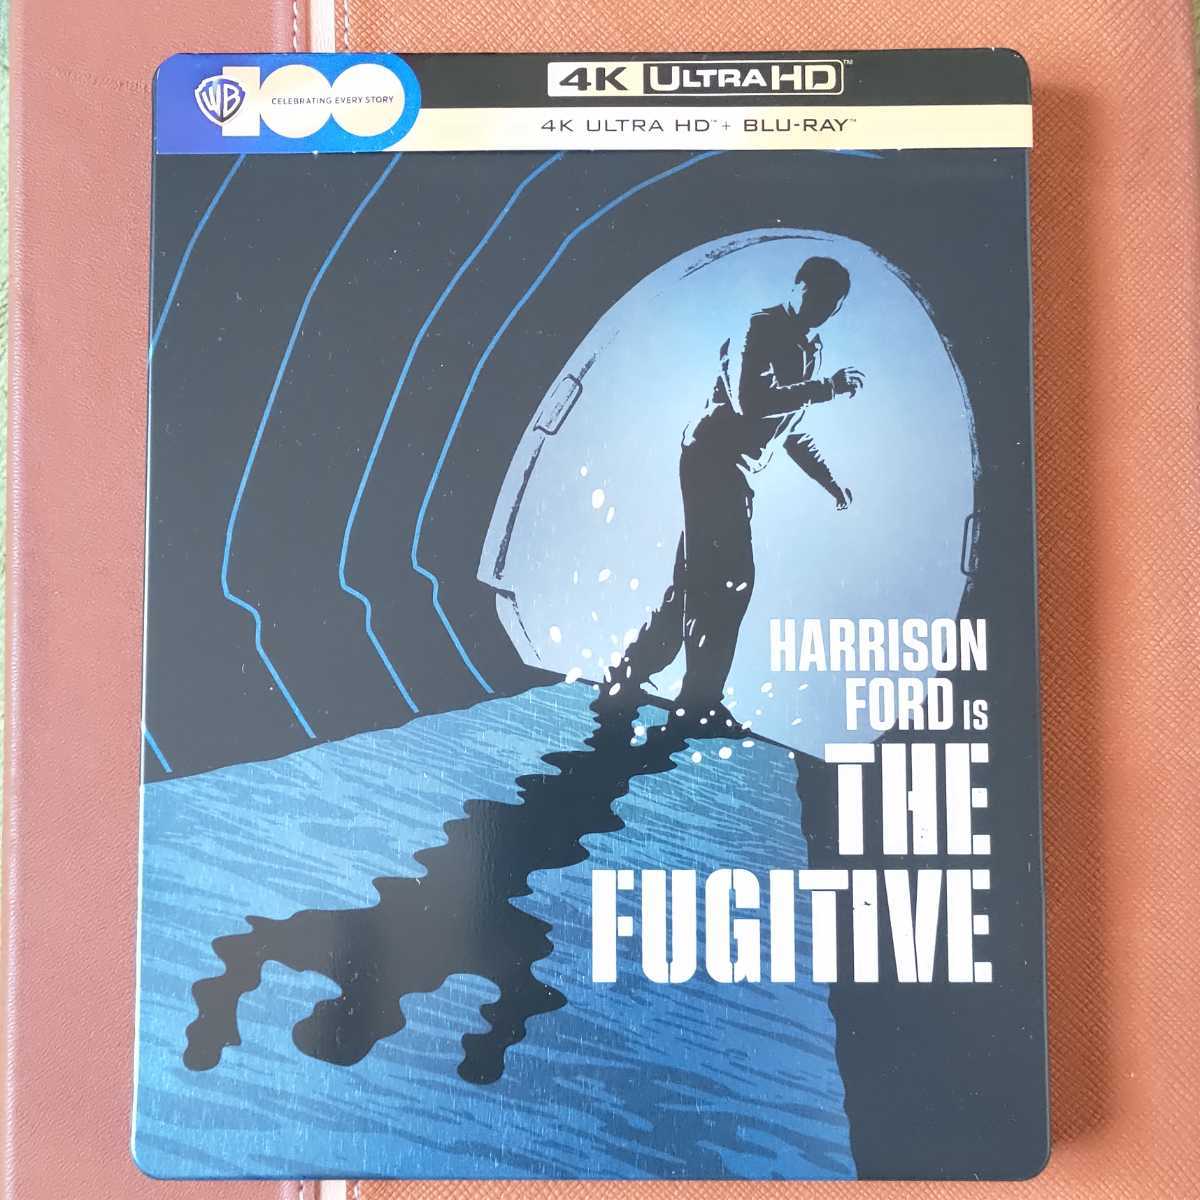 ハリソン・フォード 逃亡者 限定スチールブック仕様 [4K UHD+Blu-ray